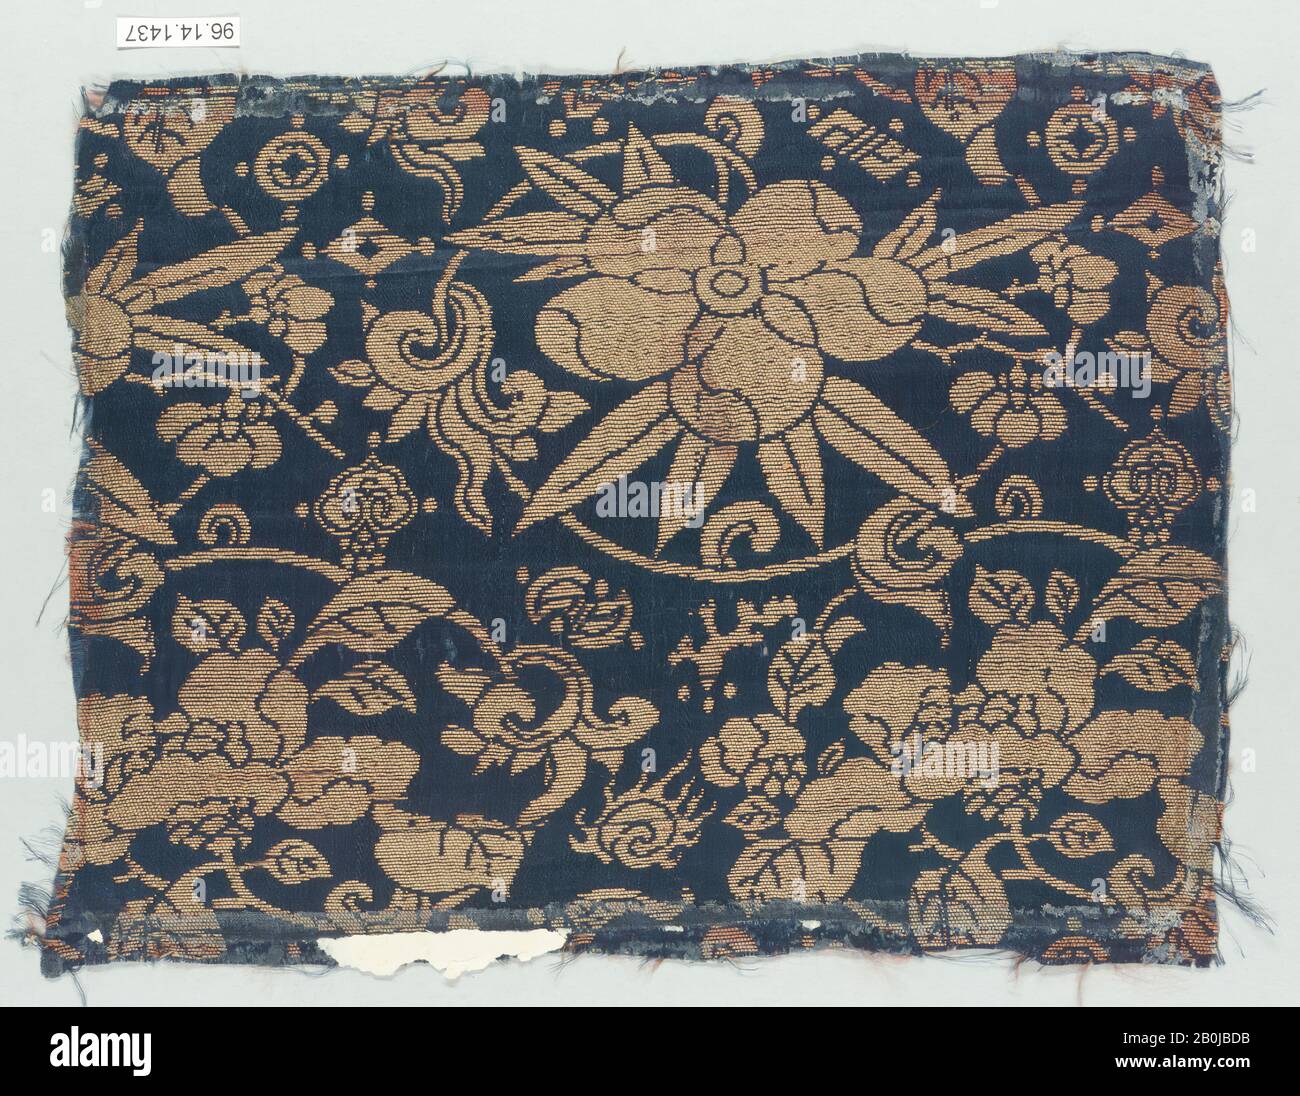 Pezzo, Giappone, 19th secolo, Giappone, seta, 6 3/4 x 9 1/2 in. (17,15 x 24,13 cm), tessuto tessile Foto Stock